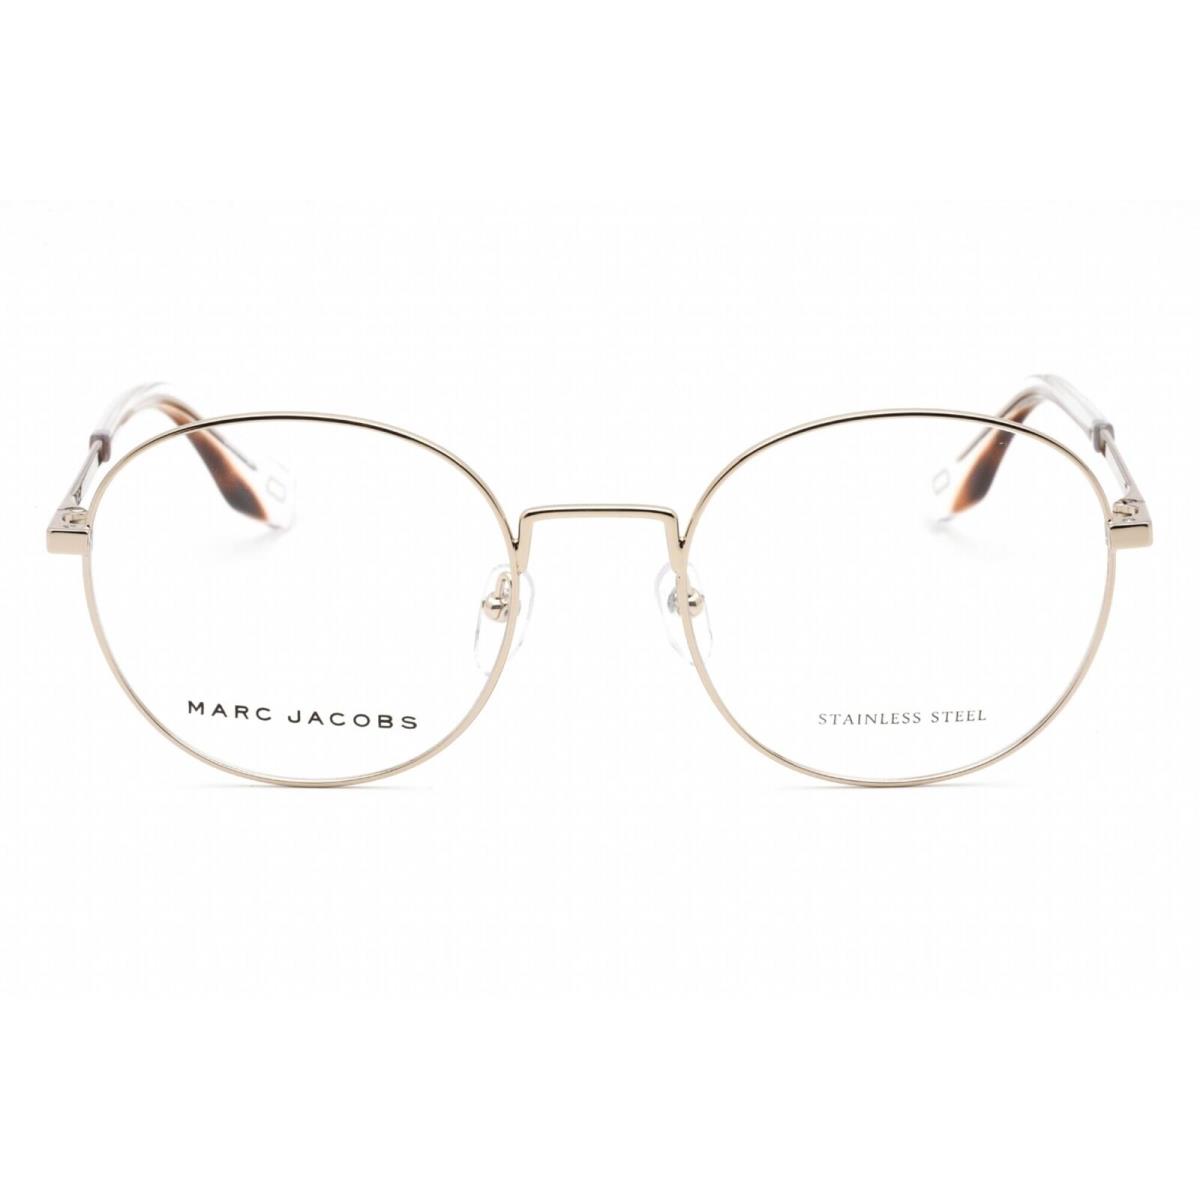 Marc Jacobs Unisex Eyeglasses Light Gold Full Rim Oval Frame Marc 272 03YG 00 - Frame: Light Gold, Lens: Clear Lens